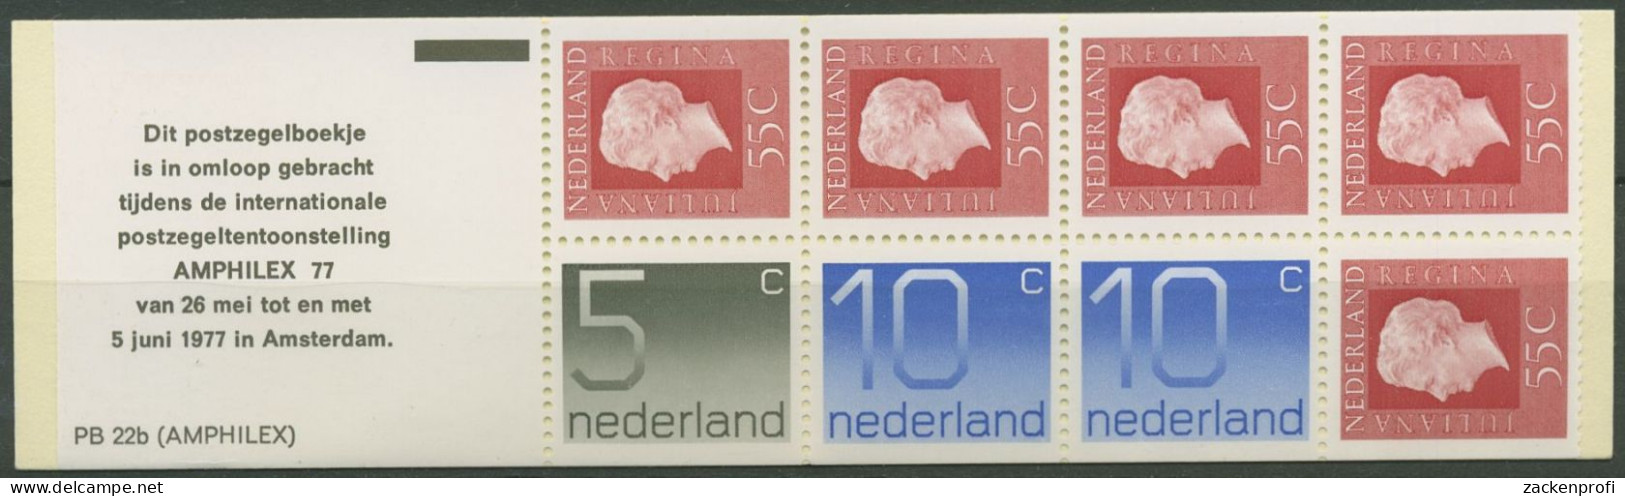 Niederlande 1976 Königin Juliana Markenheftchen MH 23 A Postfrisch (C62211) - Libretti